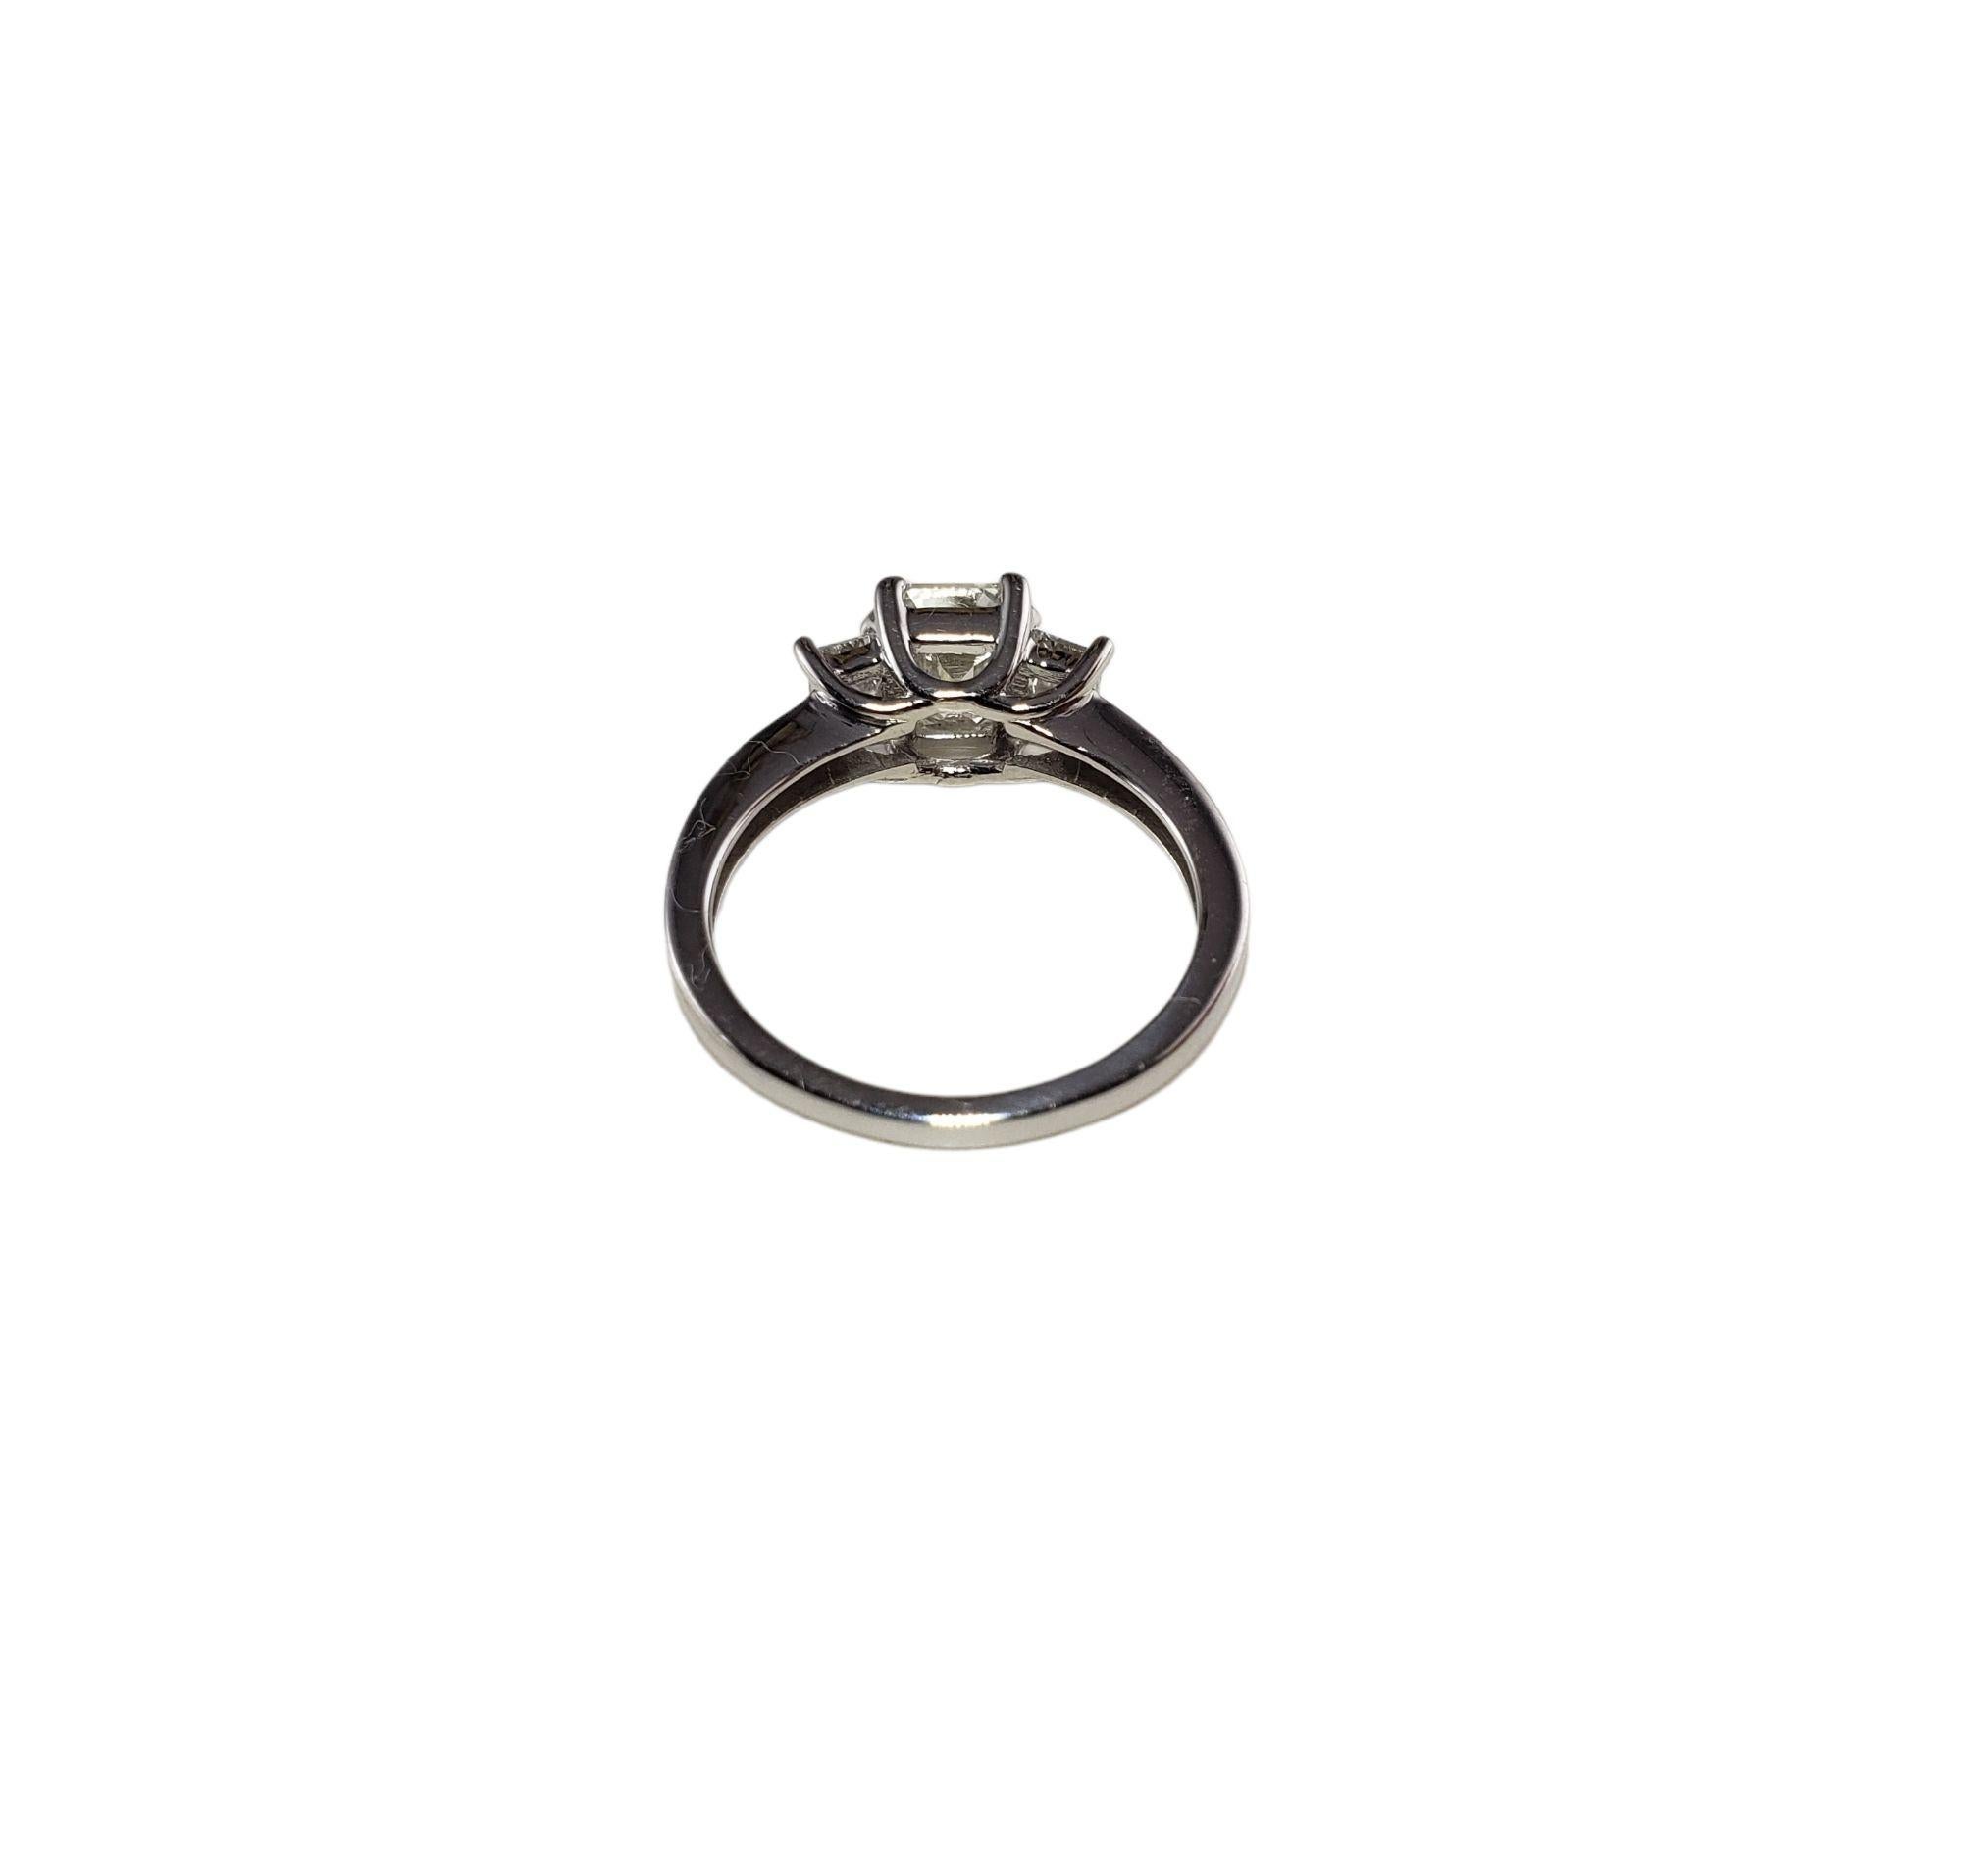 Vintage 14 Karat White Gold Diamond Engagement Ring Size 6.5 JAGi Certified-

This sparkling 